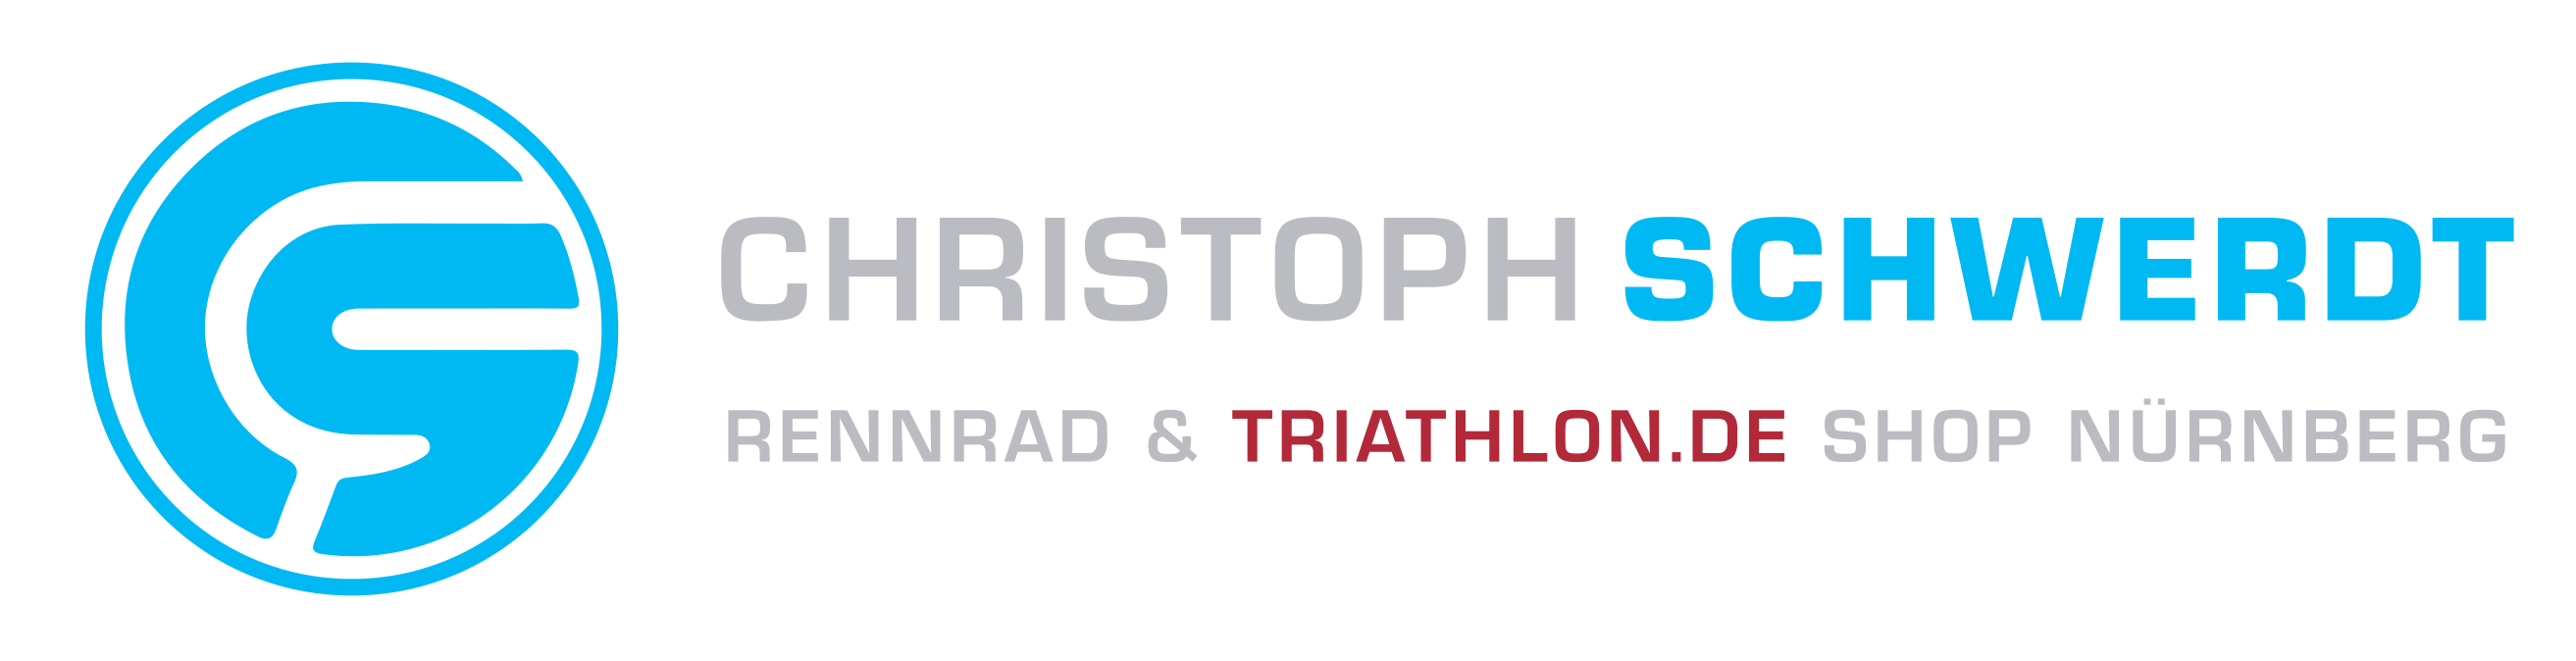 Christoph Schwerdt - Rennrad und triathlon.de Shop Nürnberg